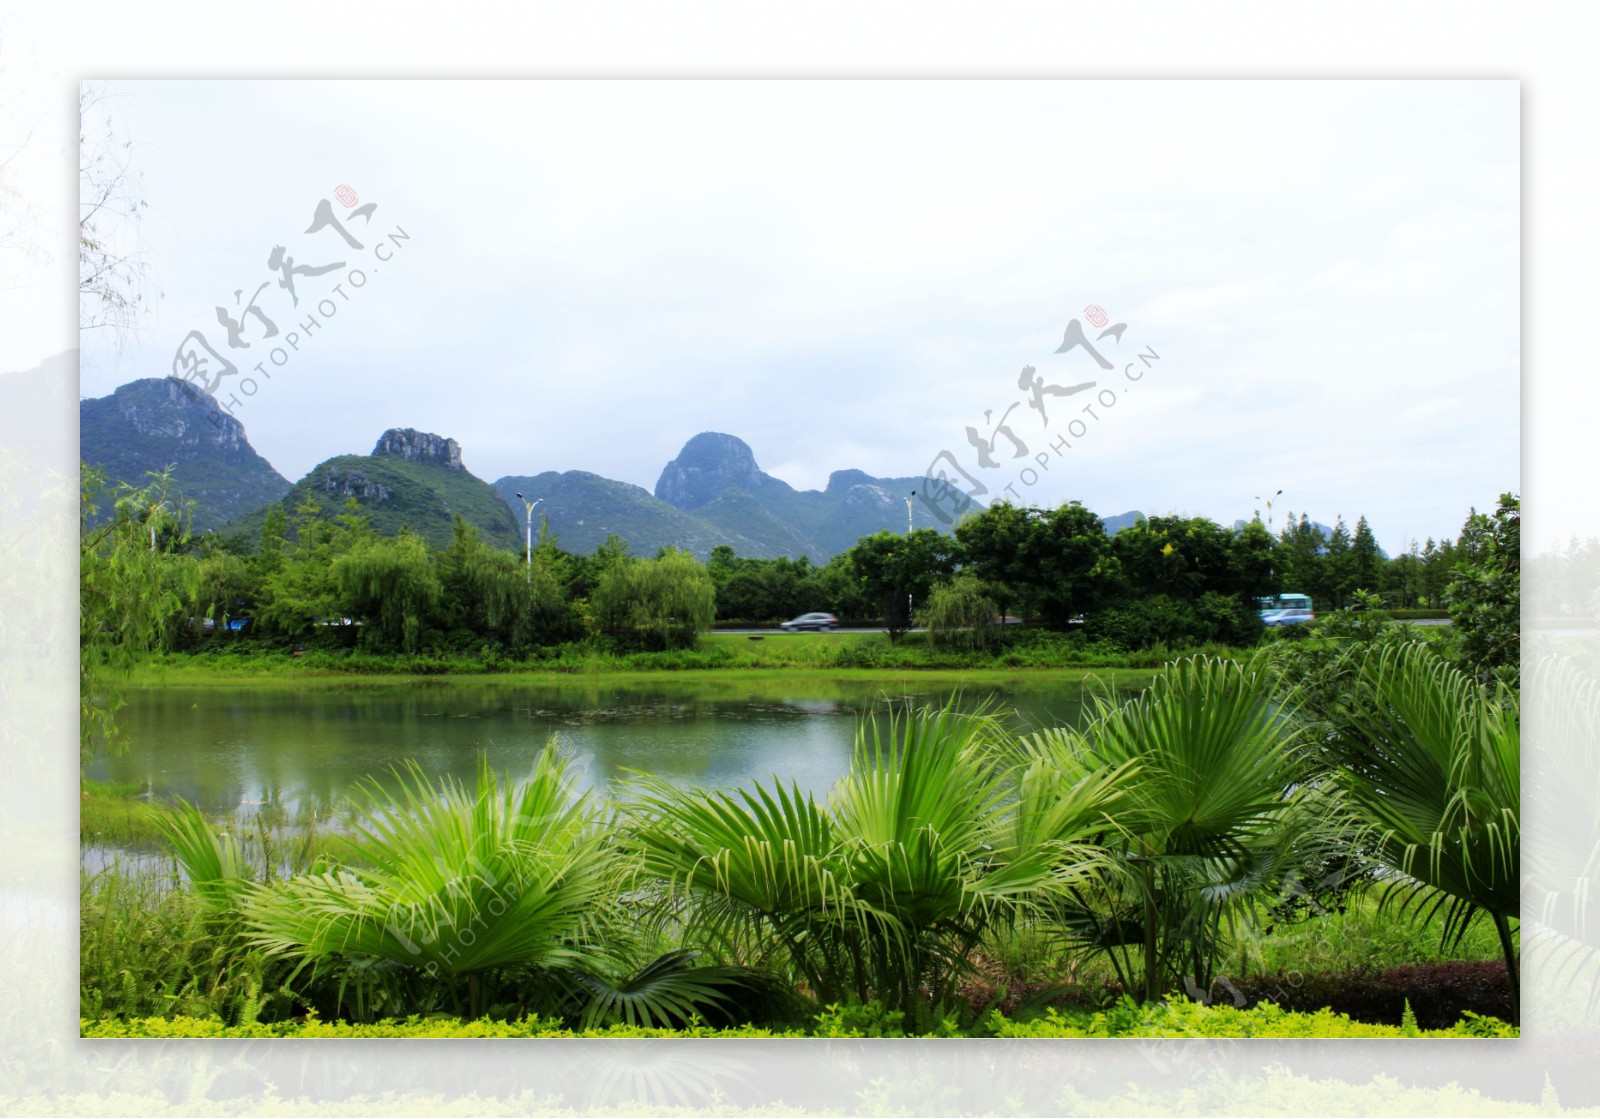 琴潭周边绿化图片